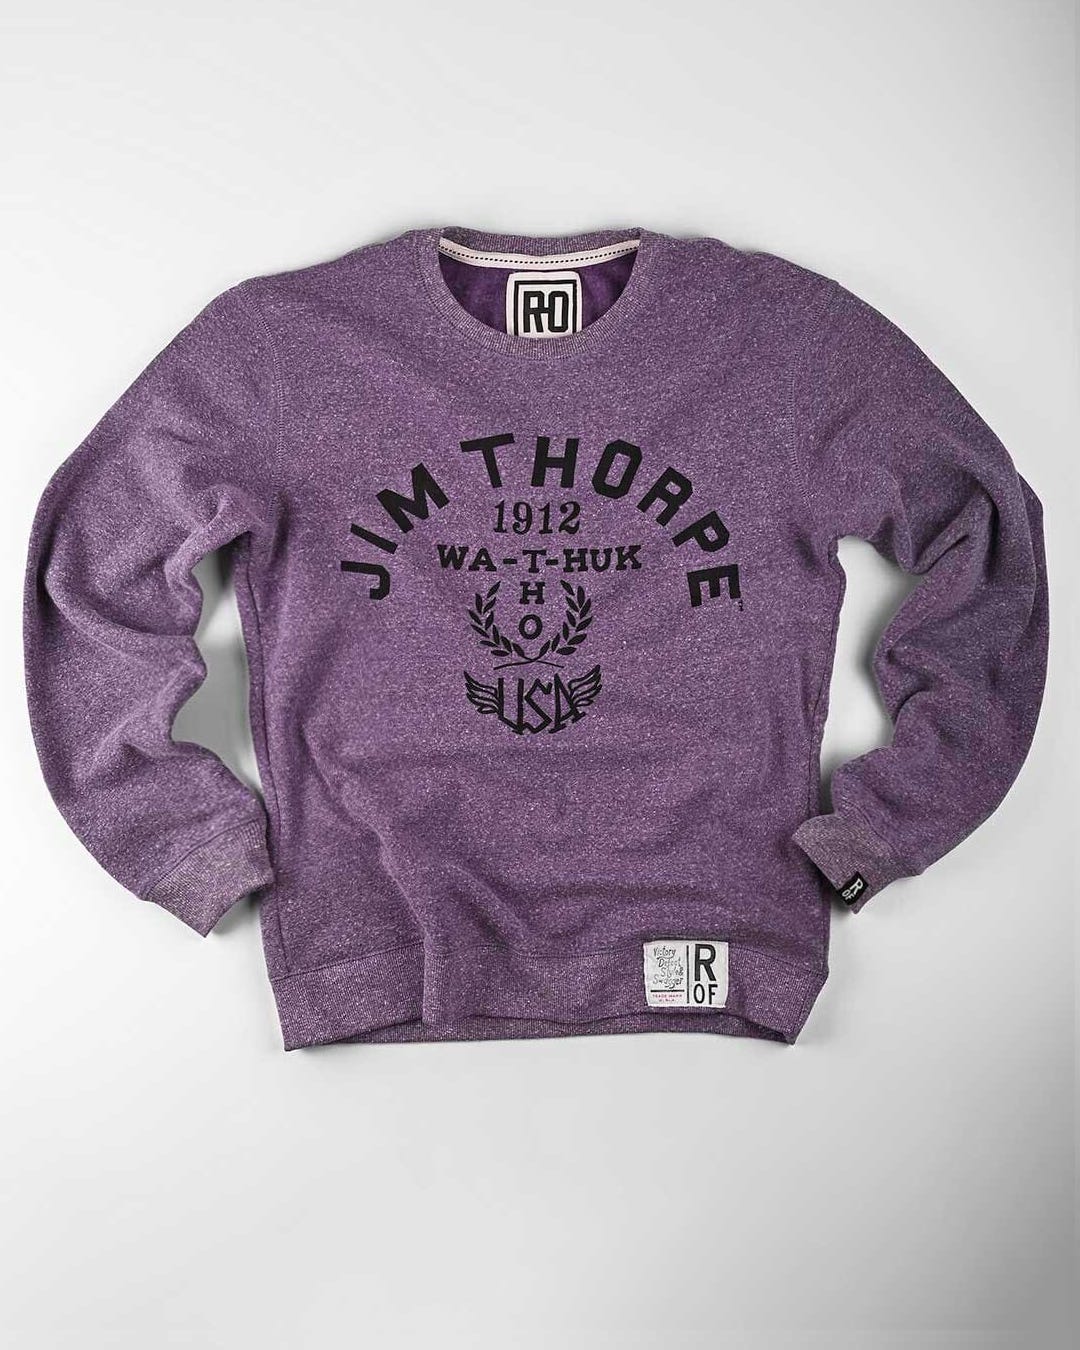 Jim Thorpe 1912 Purple Sweatshirt - Roots of Fight